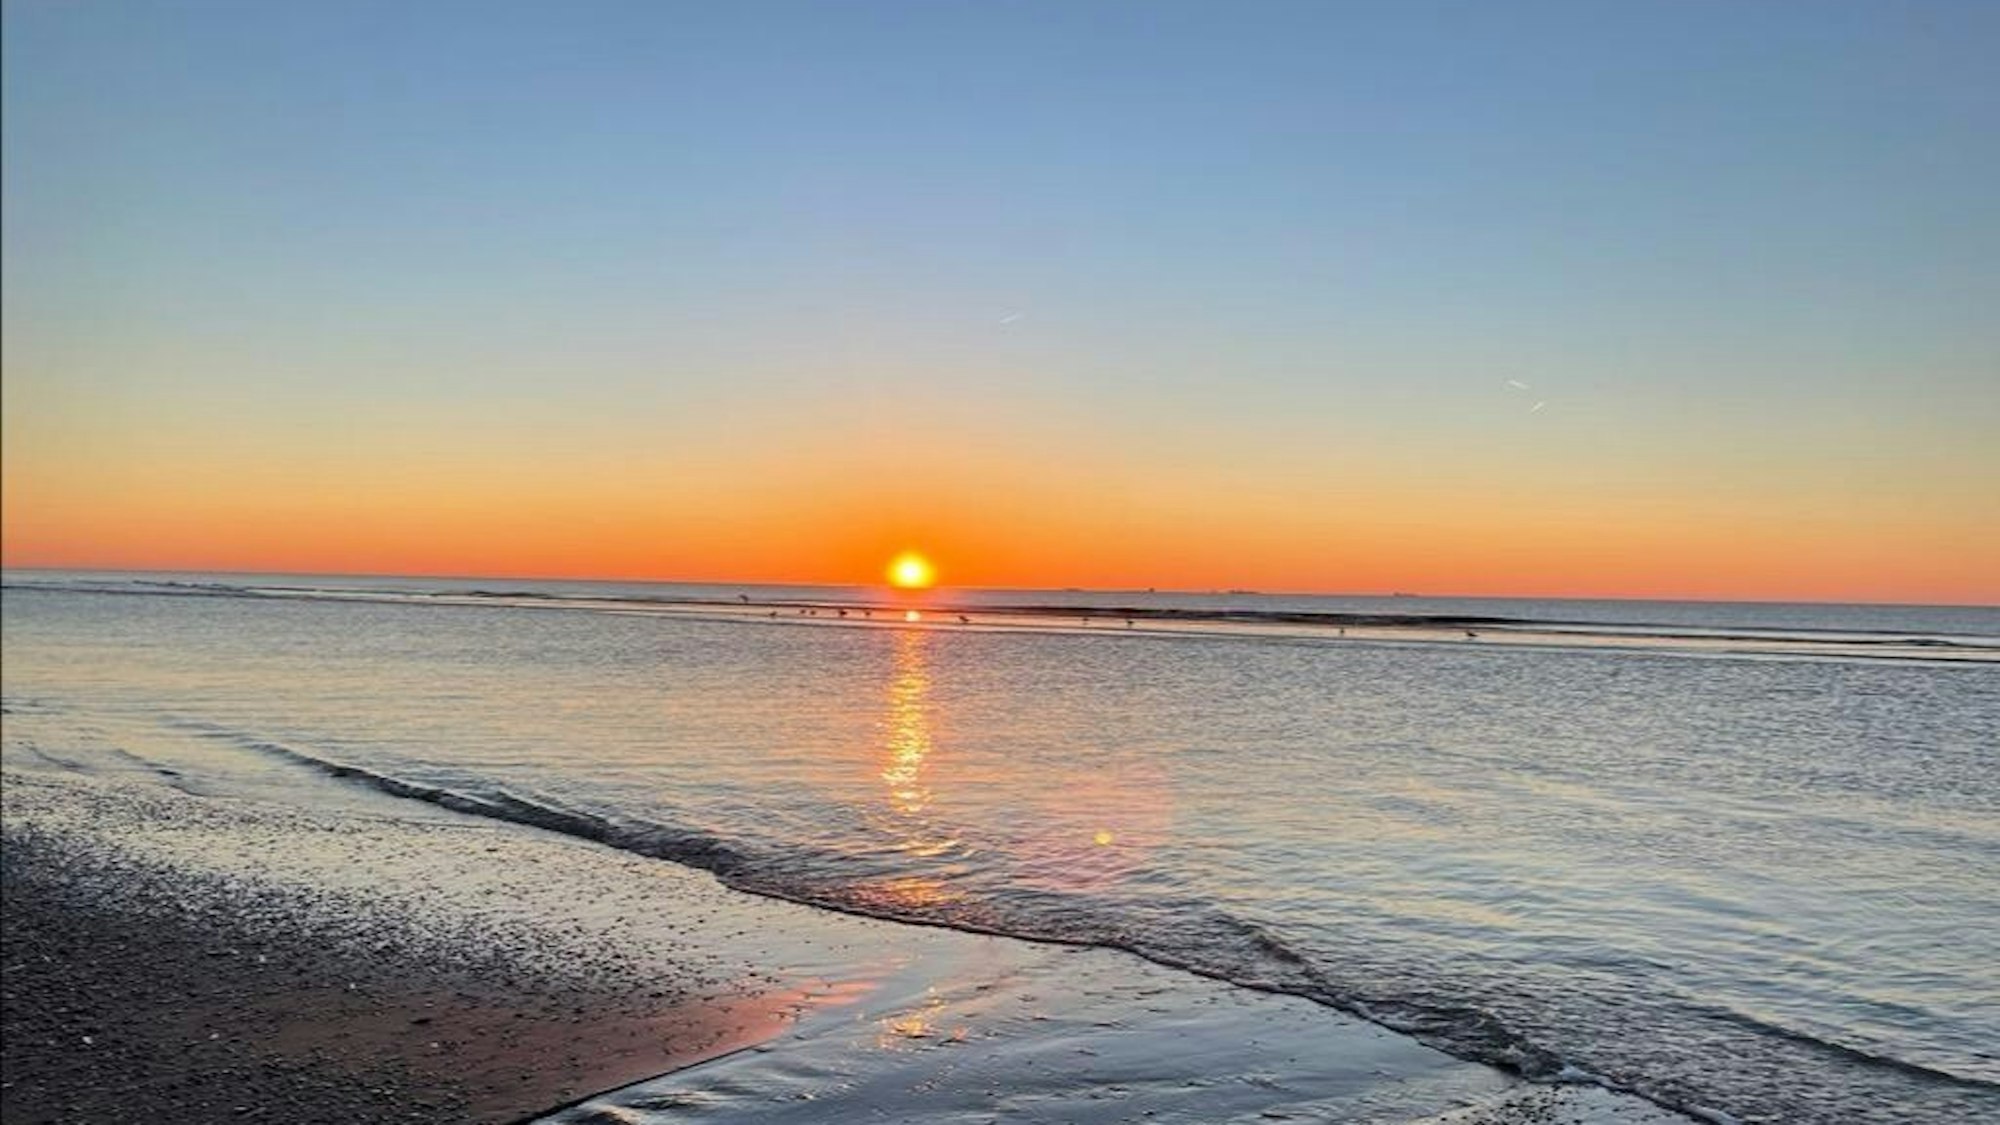 Sonnenuntergang an der niederländischen Küste. Niederlande/Holland. Katwijk, 2022.